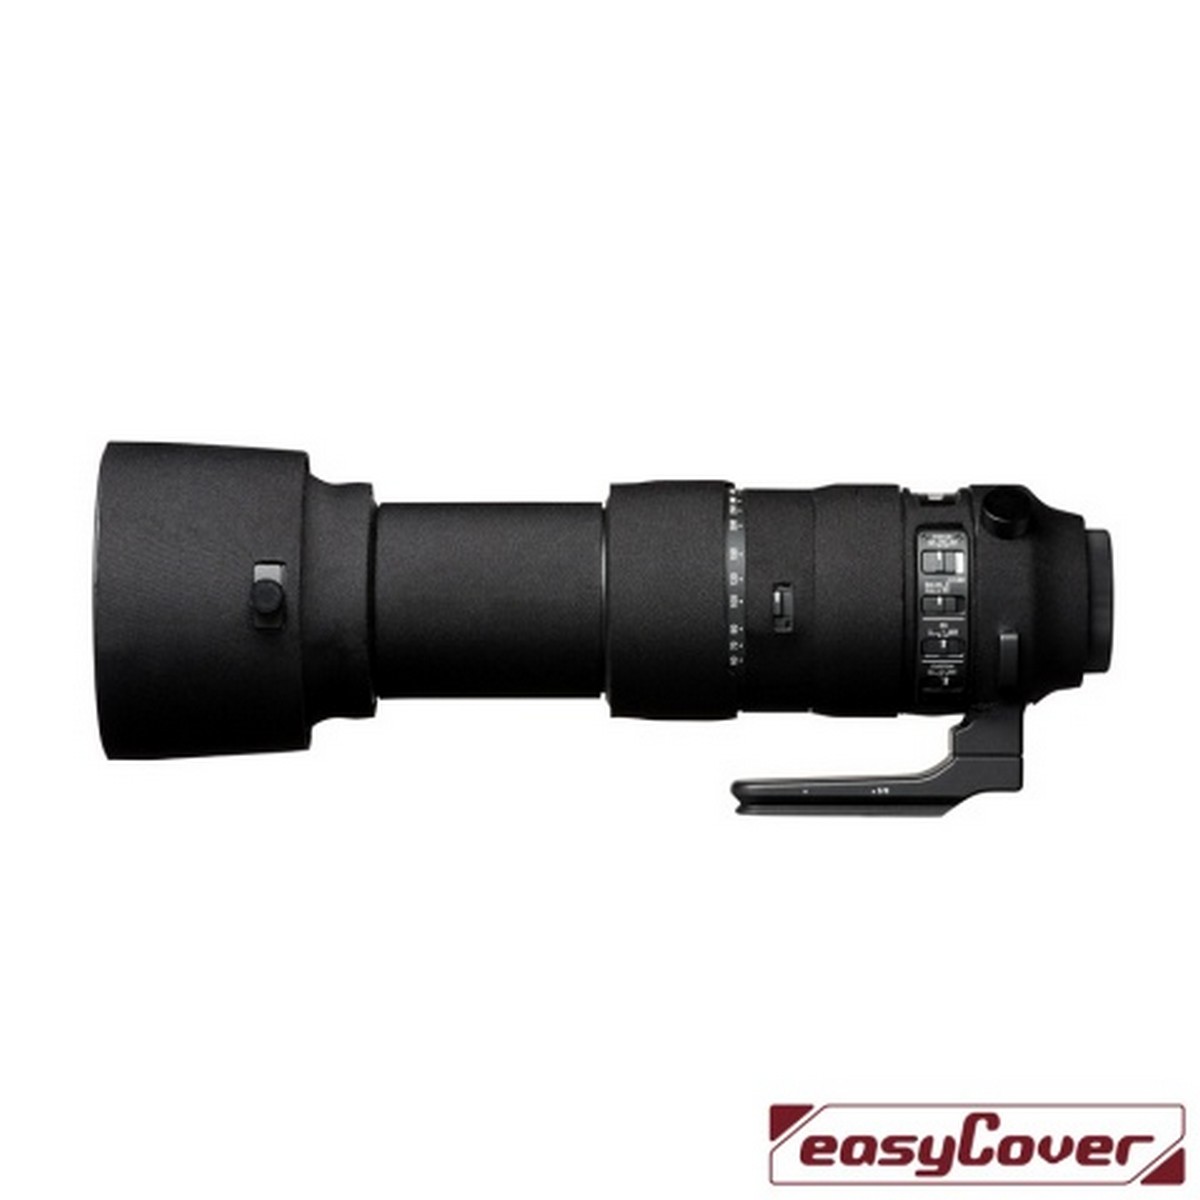 Easycover Lens Oak Objektivschutz für Sigma 60-600 mm 1:4,5-6,3 DG OS HSM Sport Schwarz